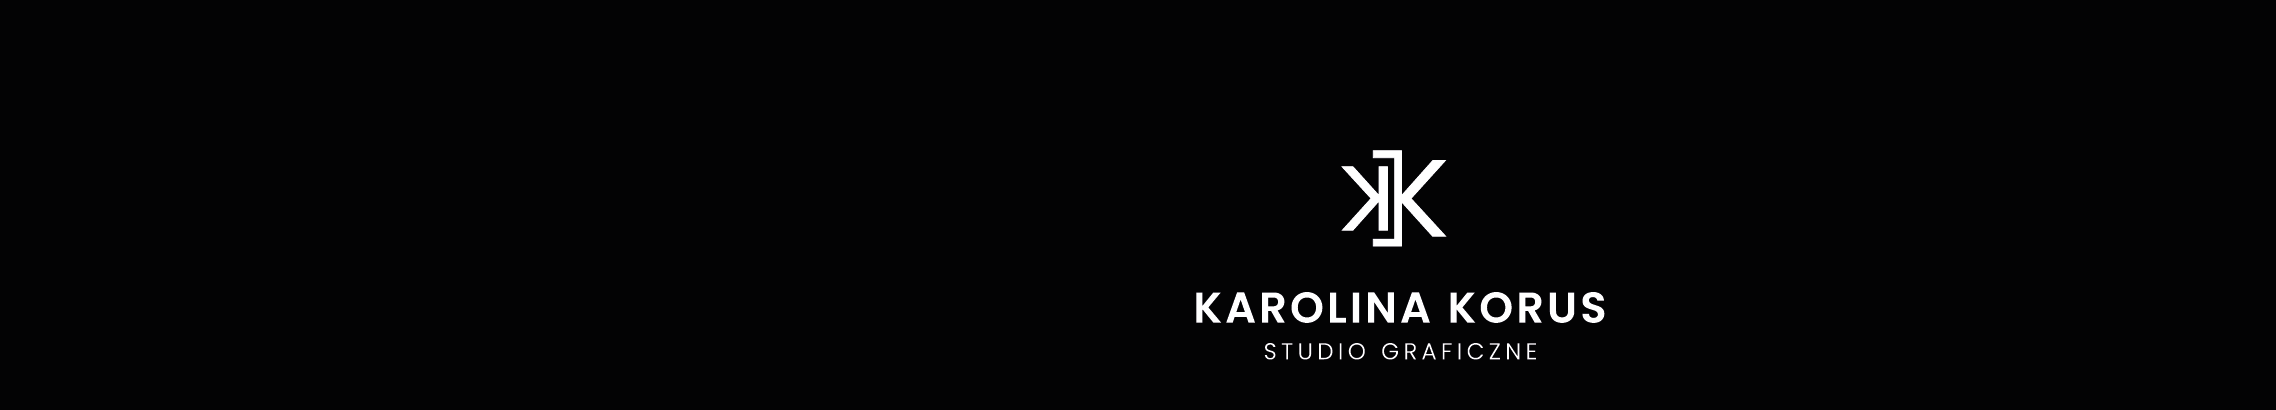 Karolina Korus profil başlığı